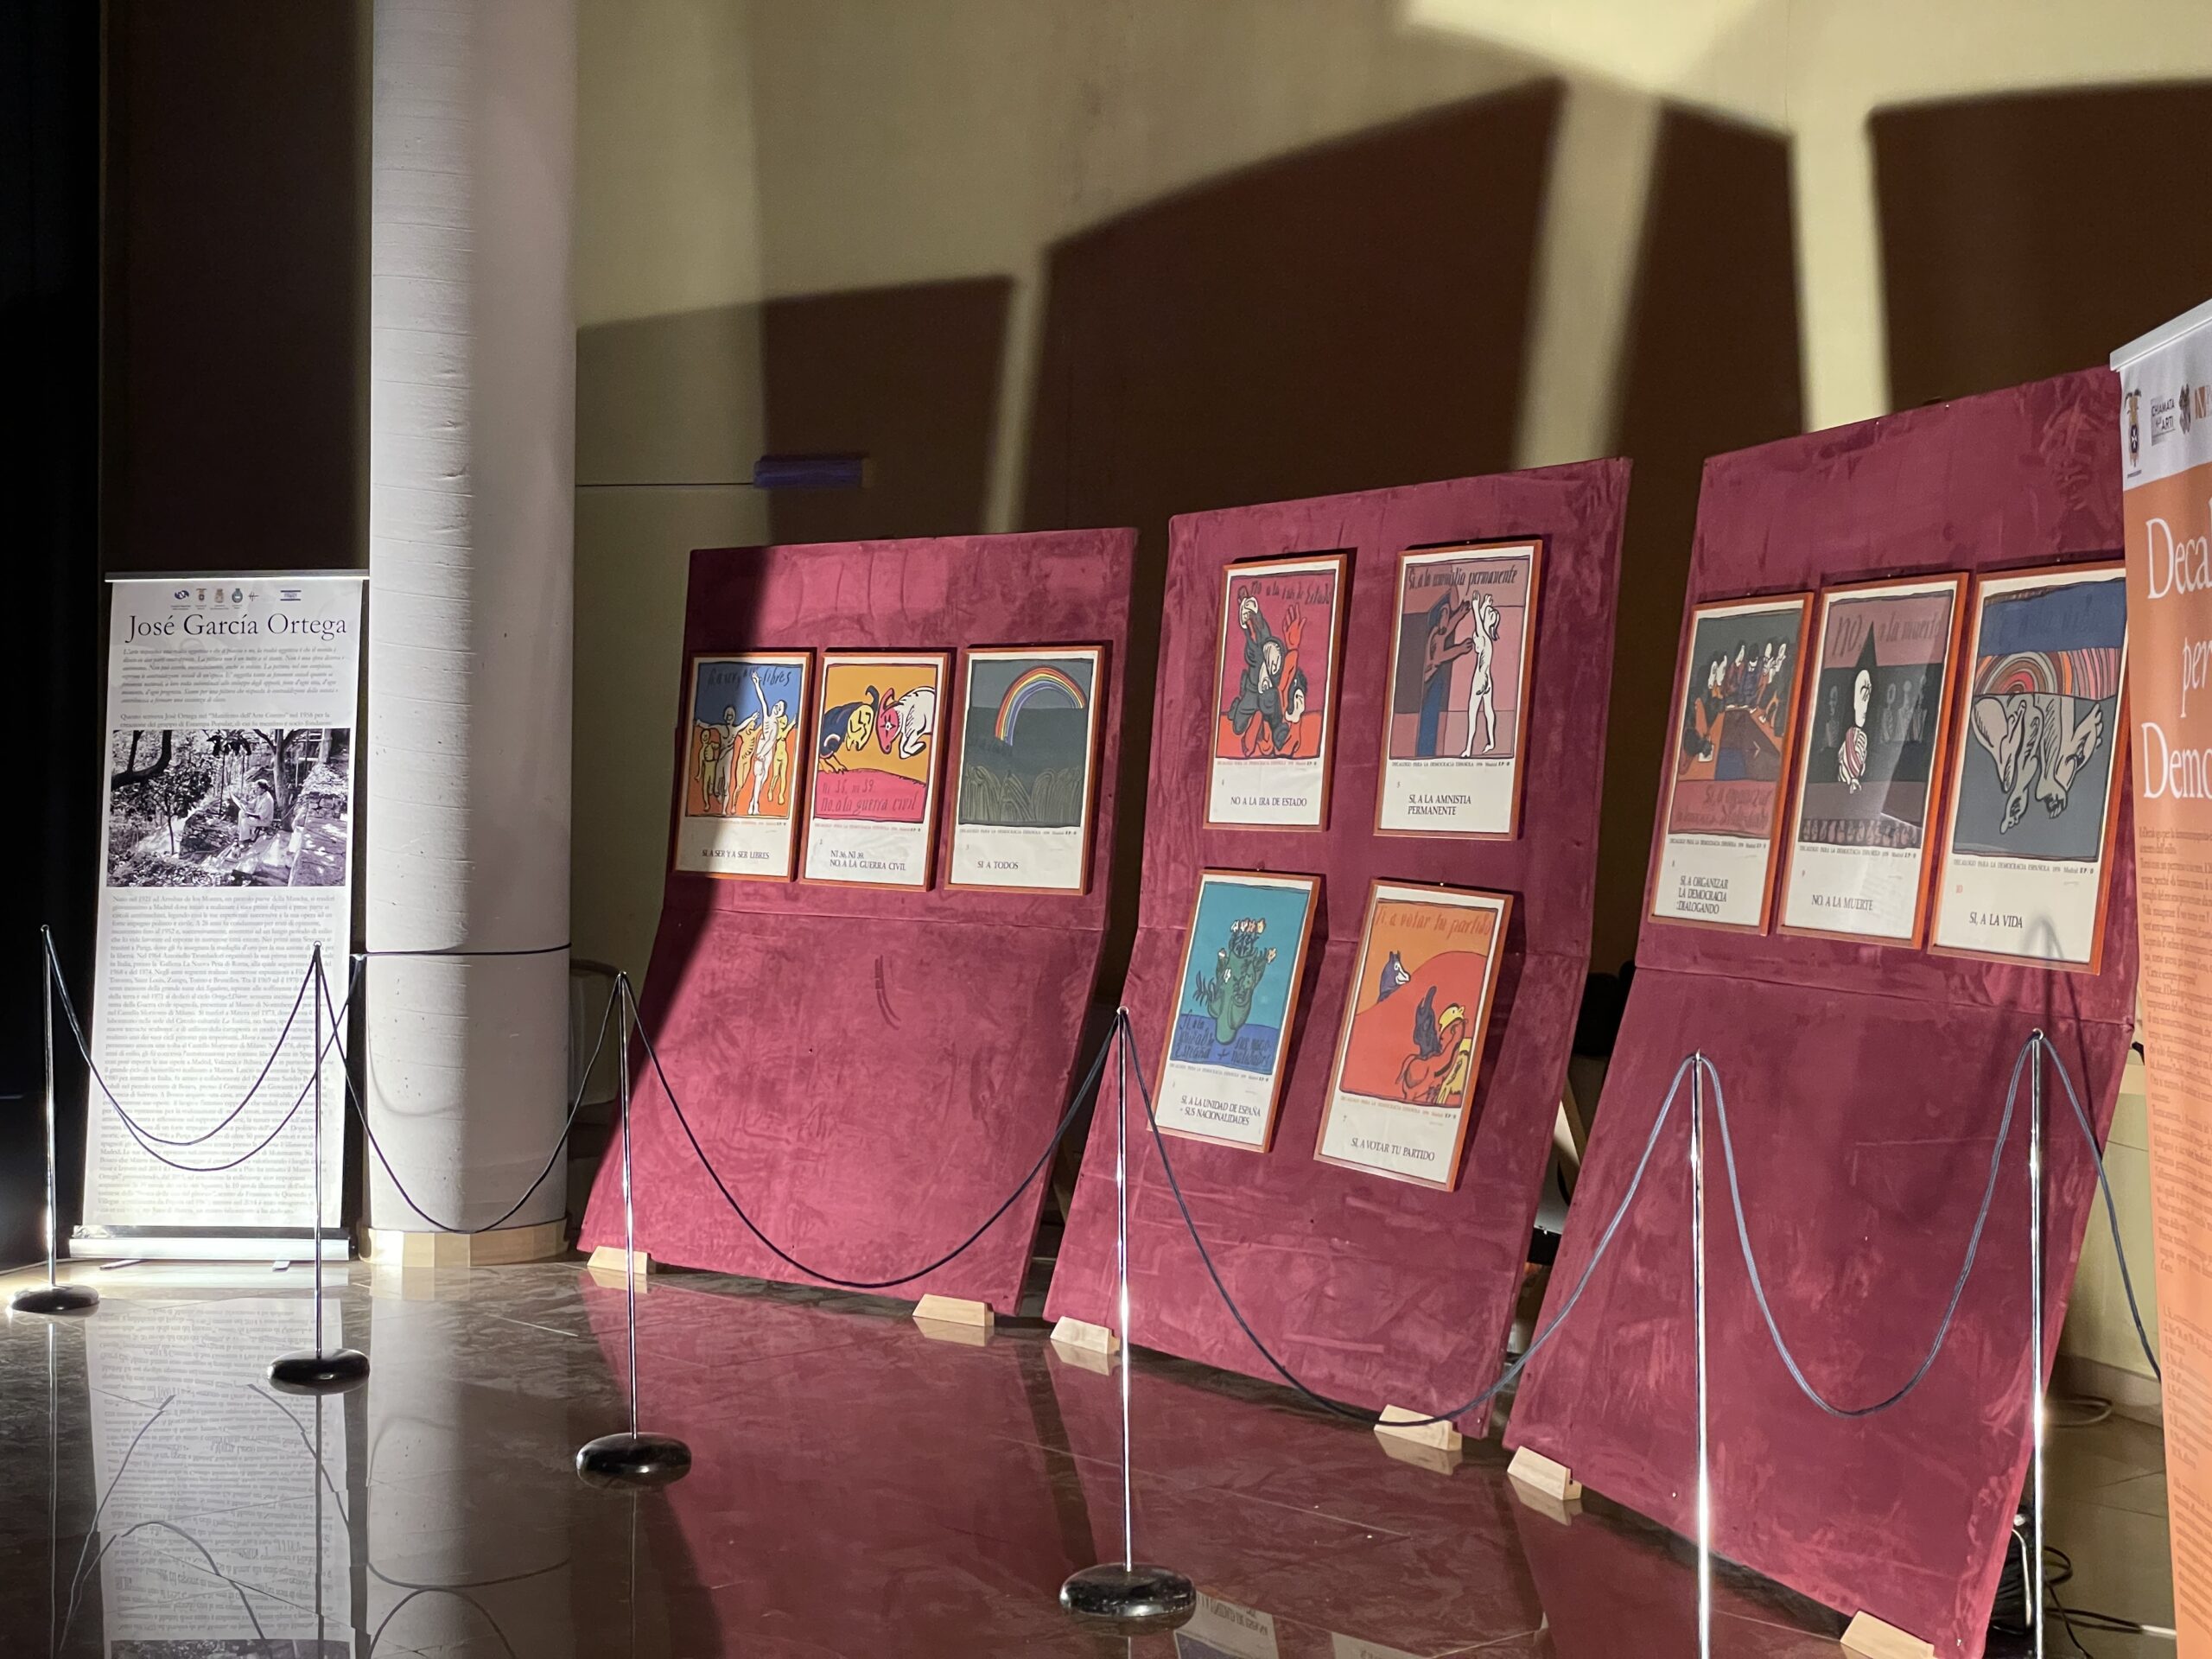 La mostra “Decalogo per la Democrazia” di José Ortega in esposizione a Sapri